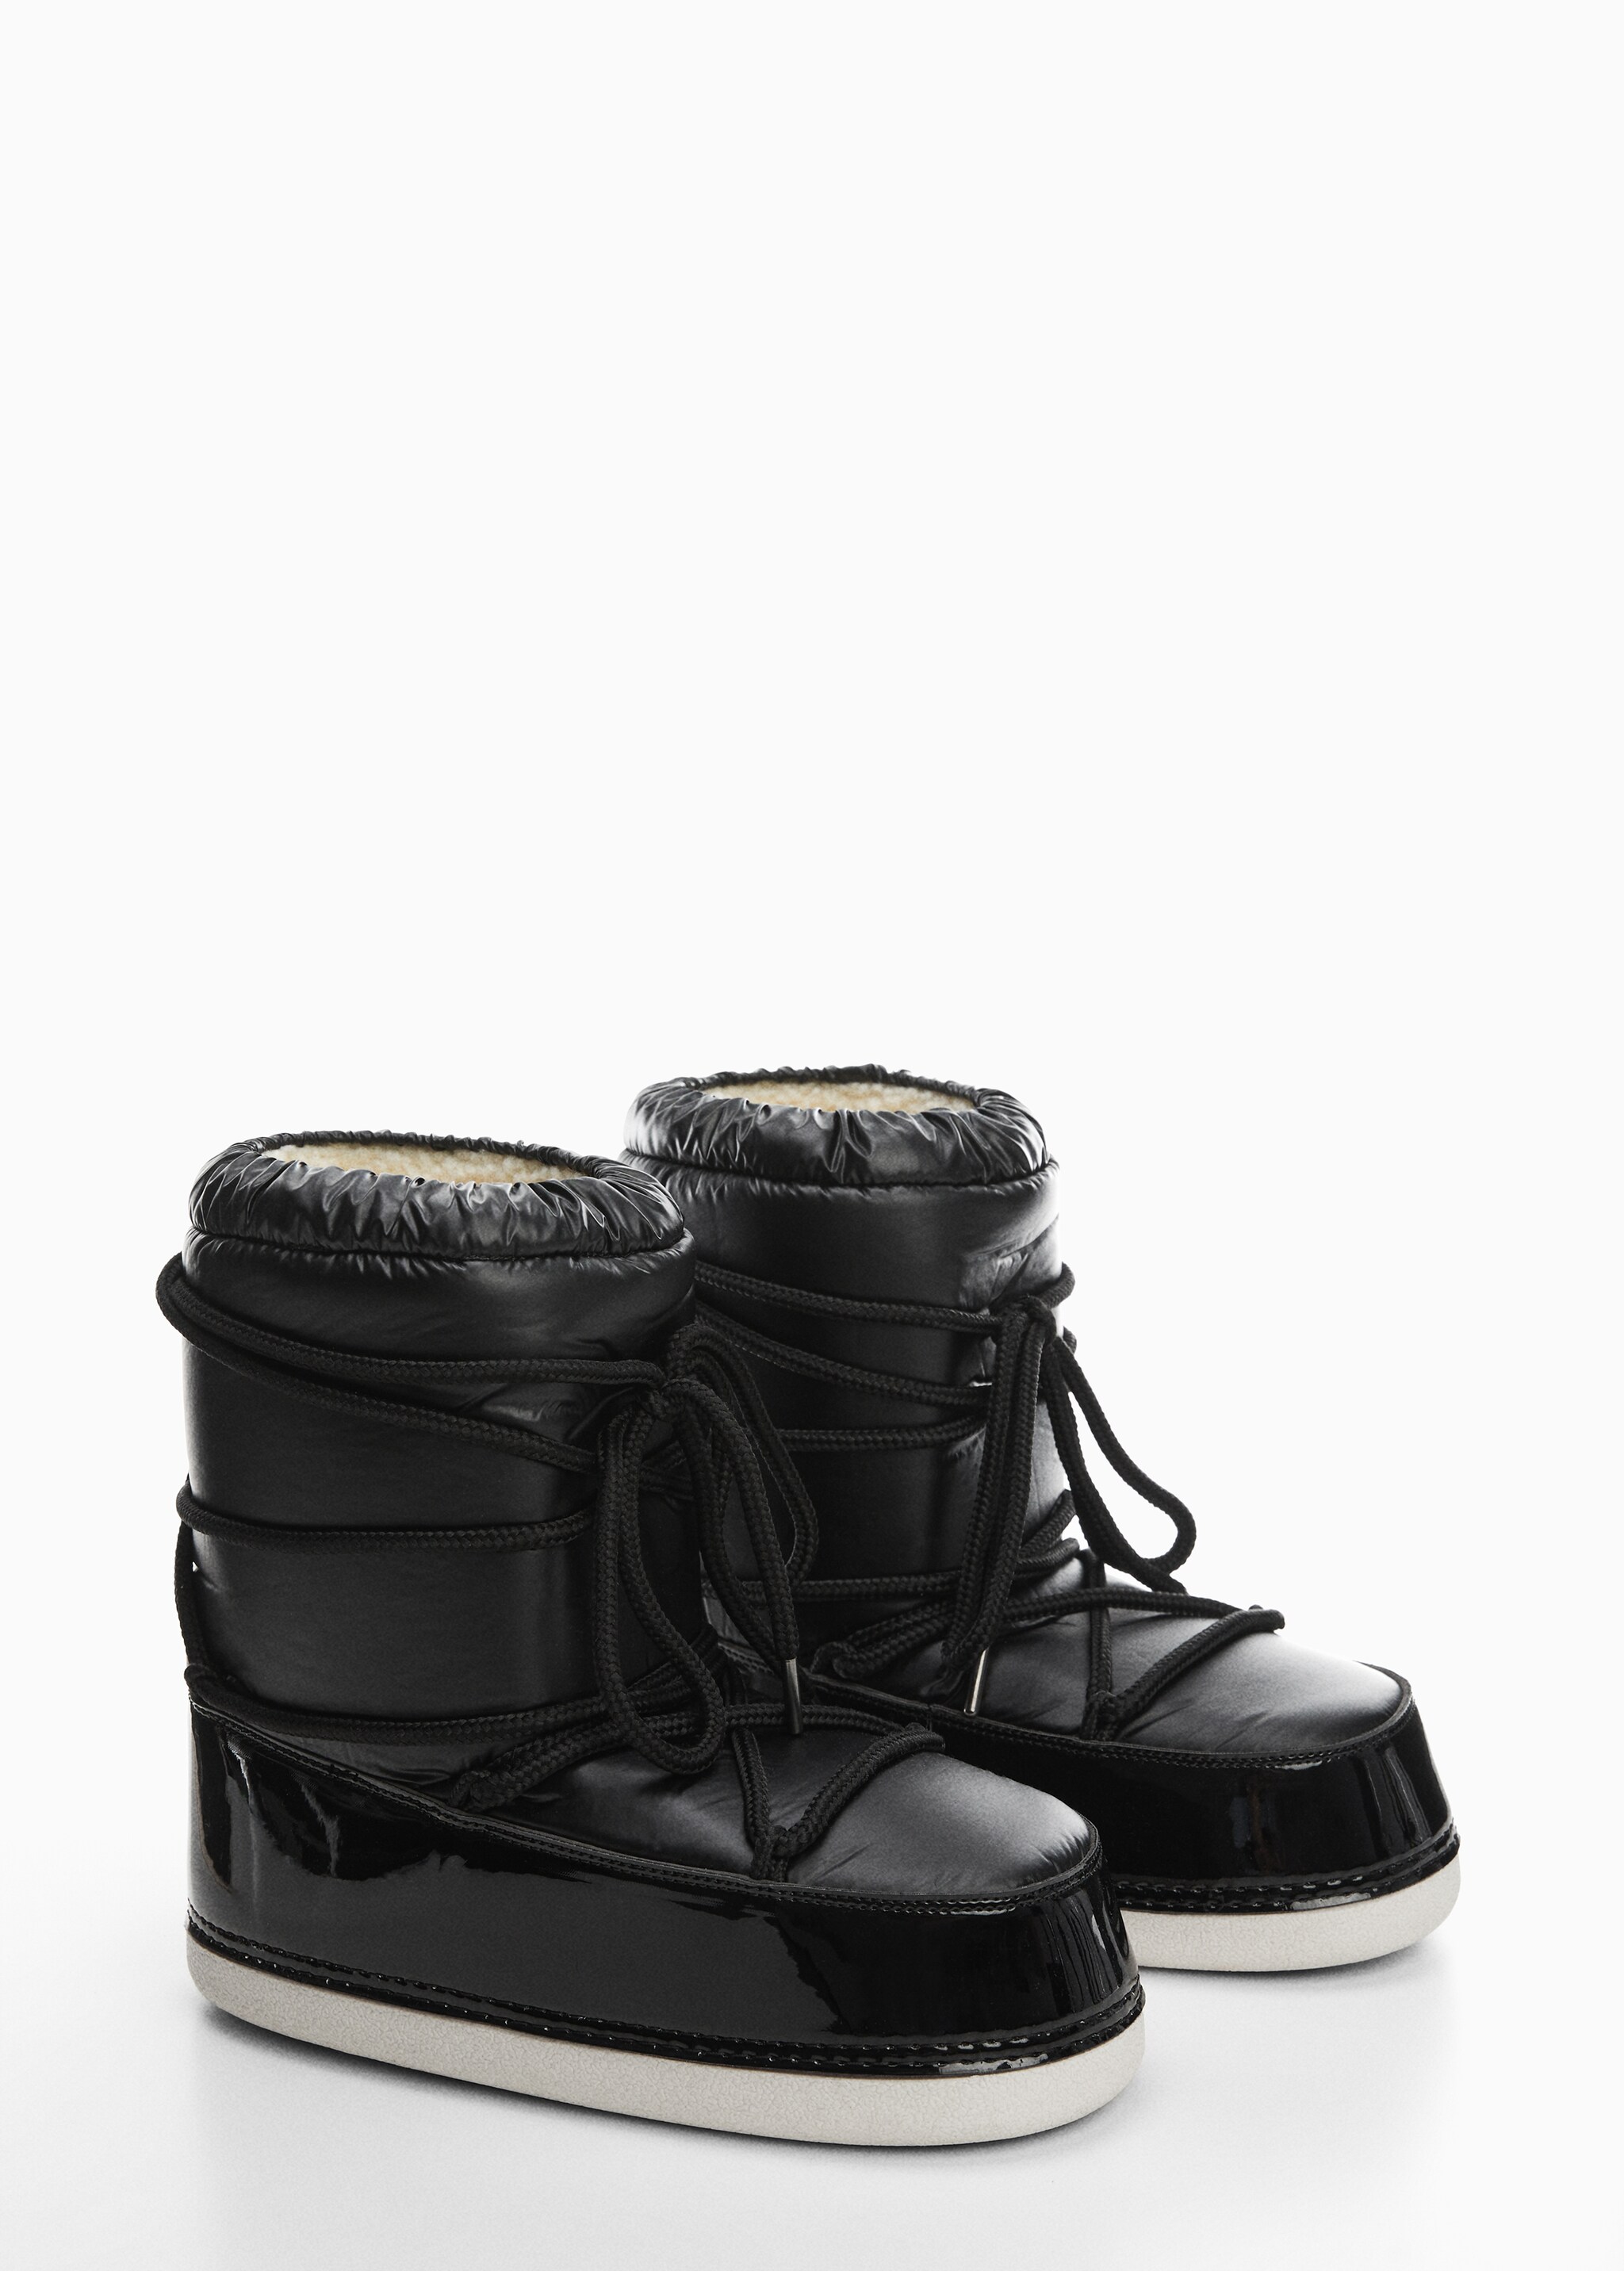 Lace-up boots - Middenvlak